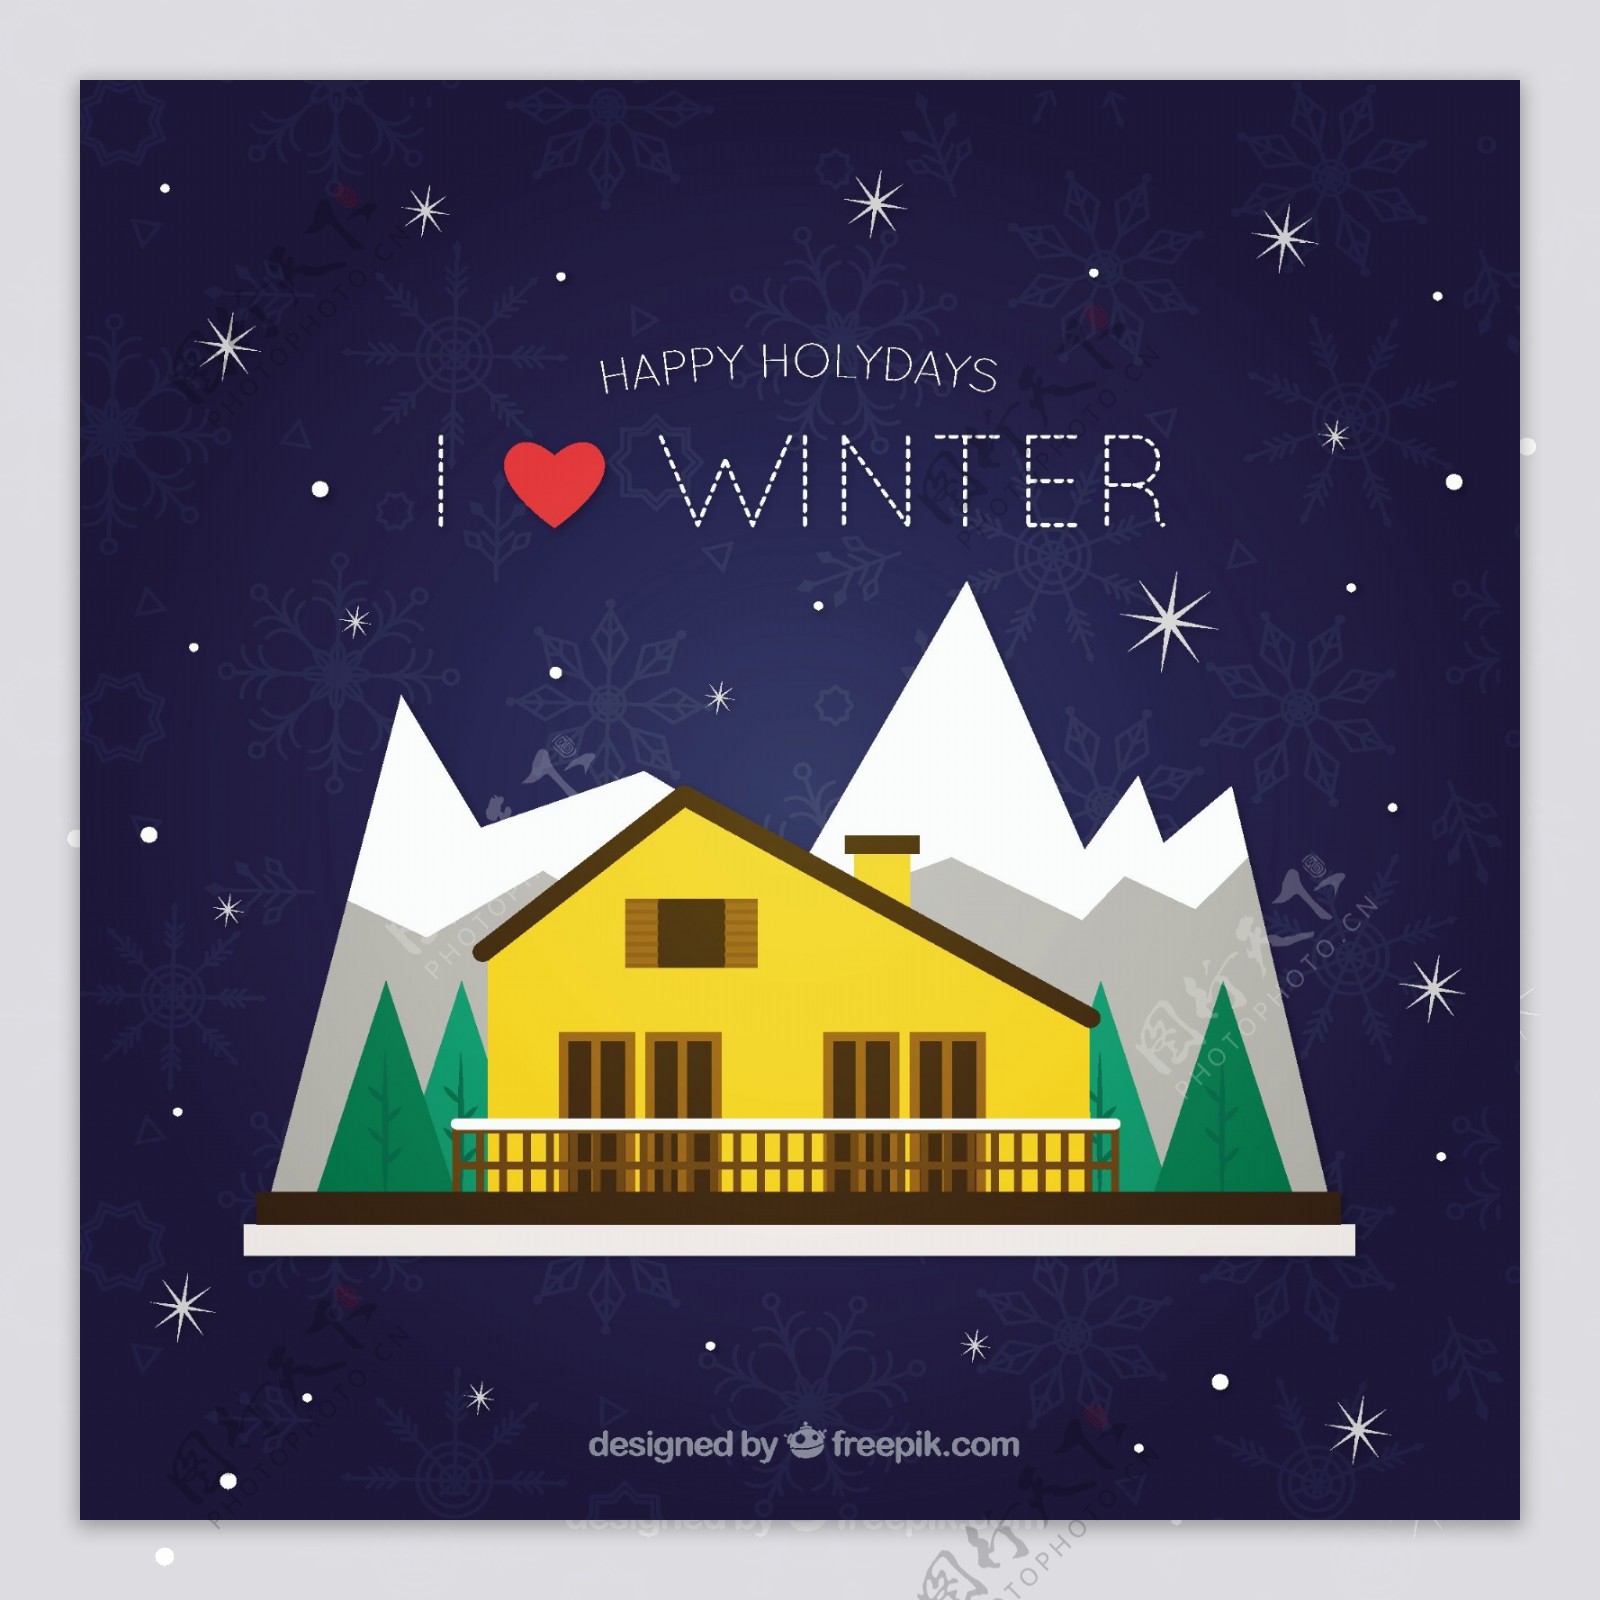 冬天的背景与房子和山在平面设计